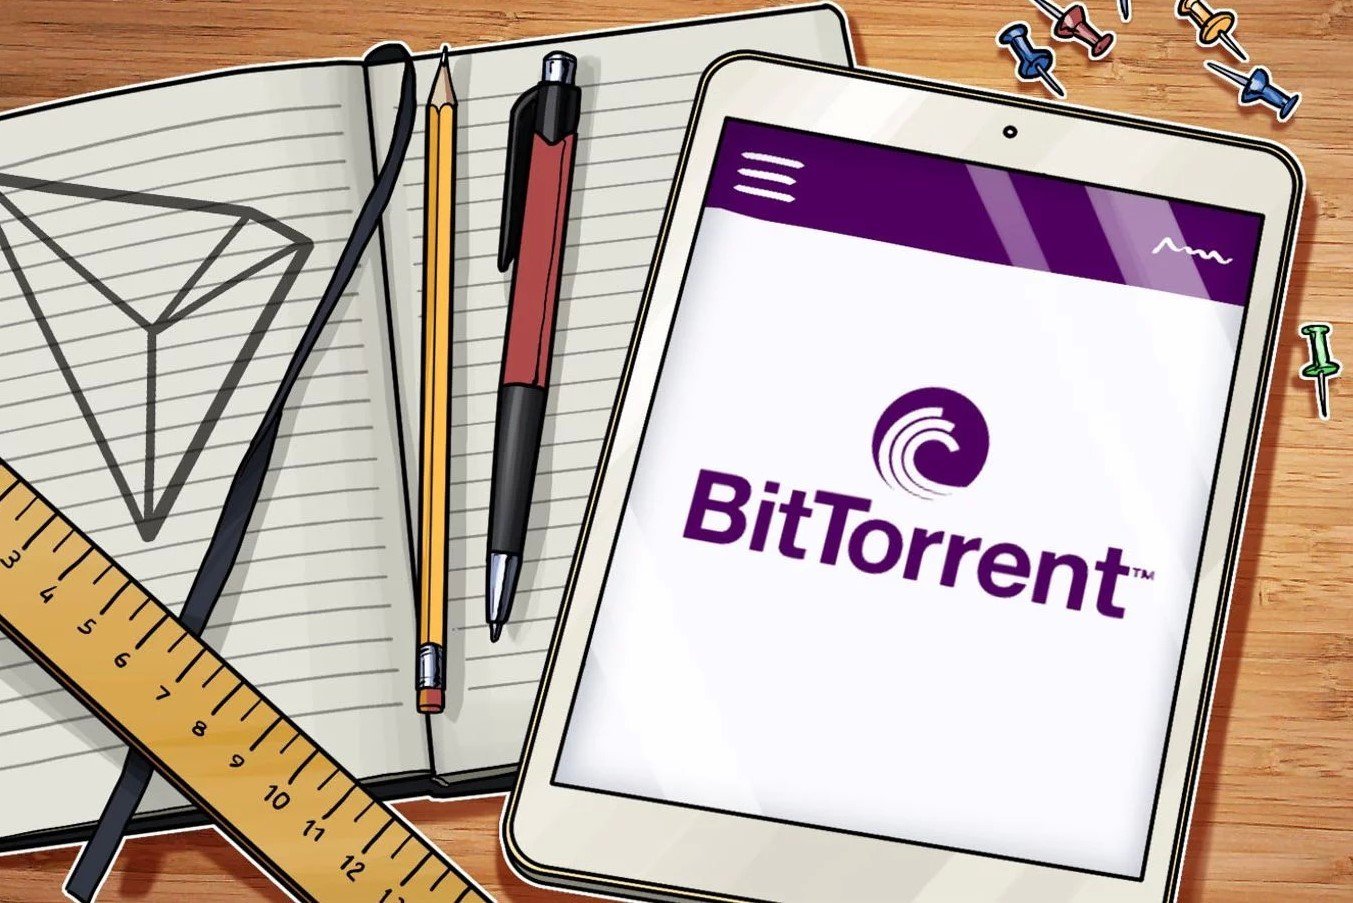 Обзор криптовалюты BitTorrent и прогноз на 2022 год